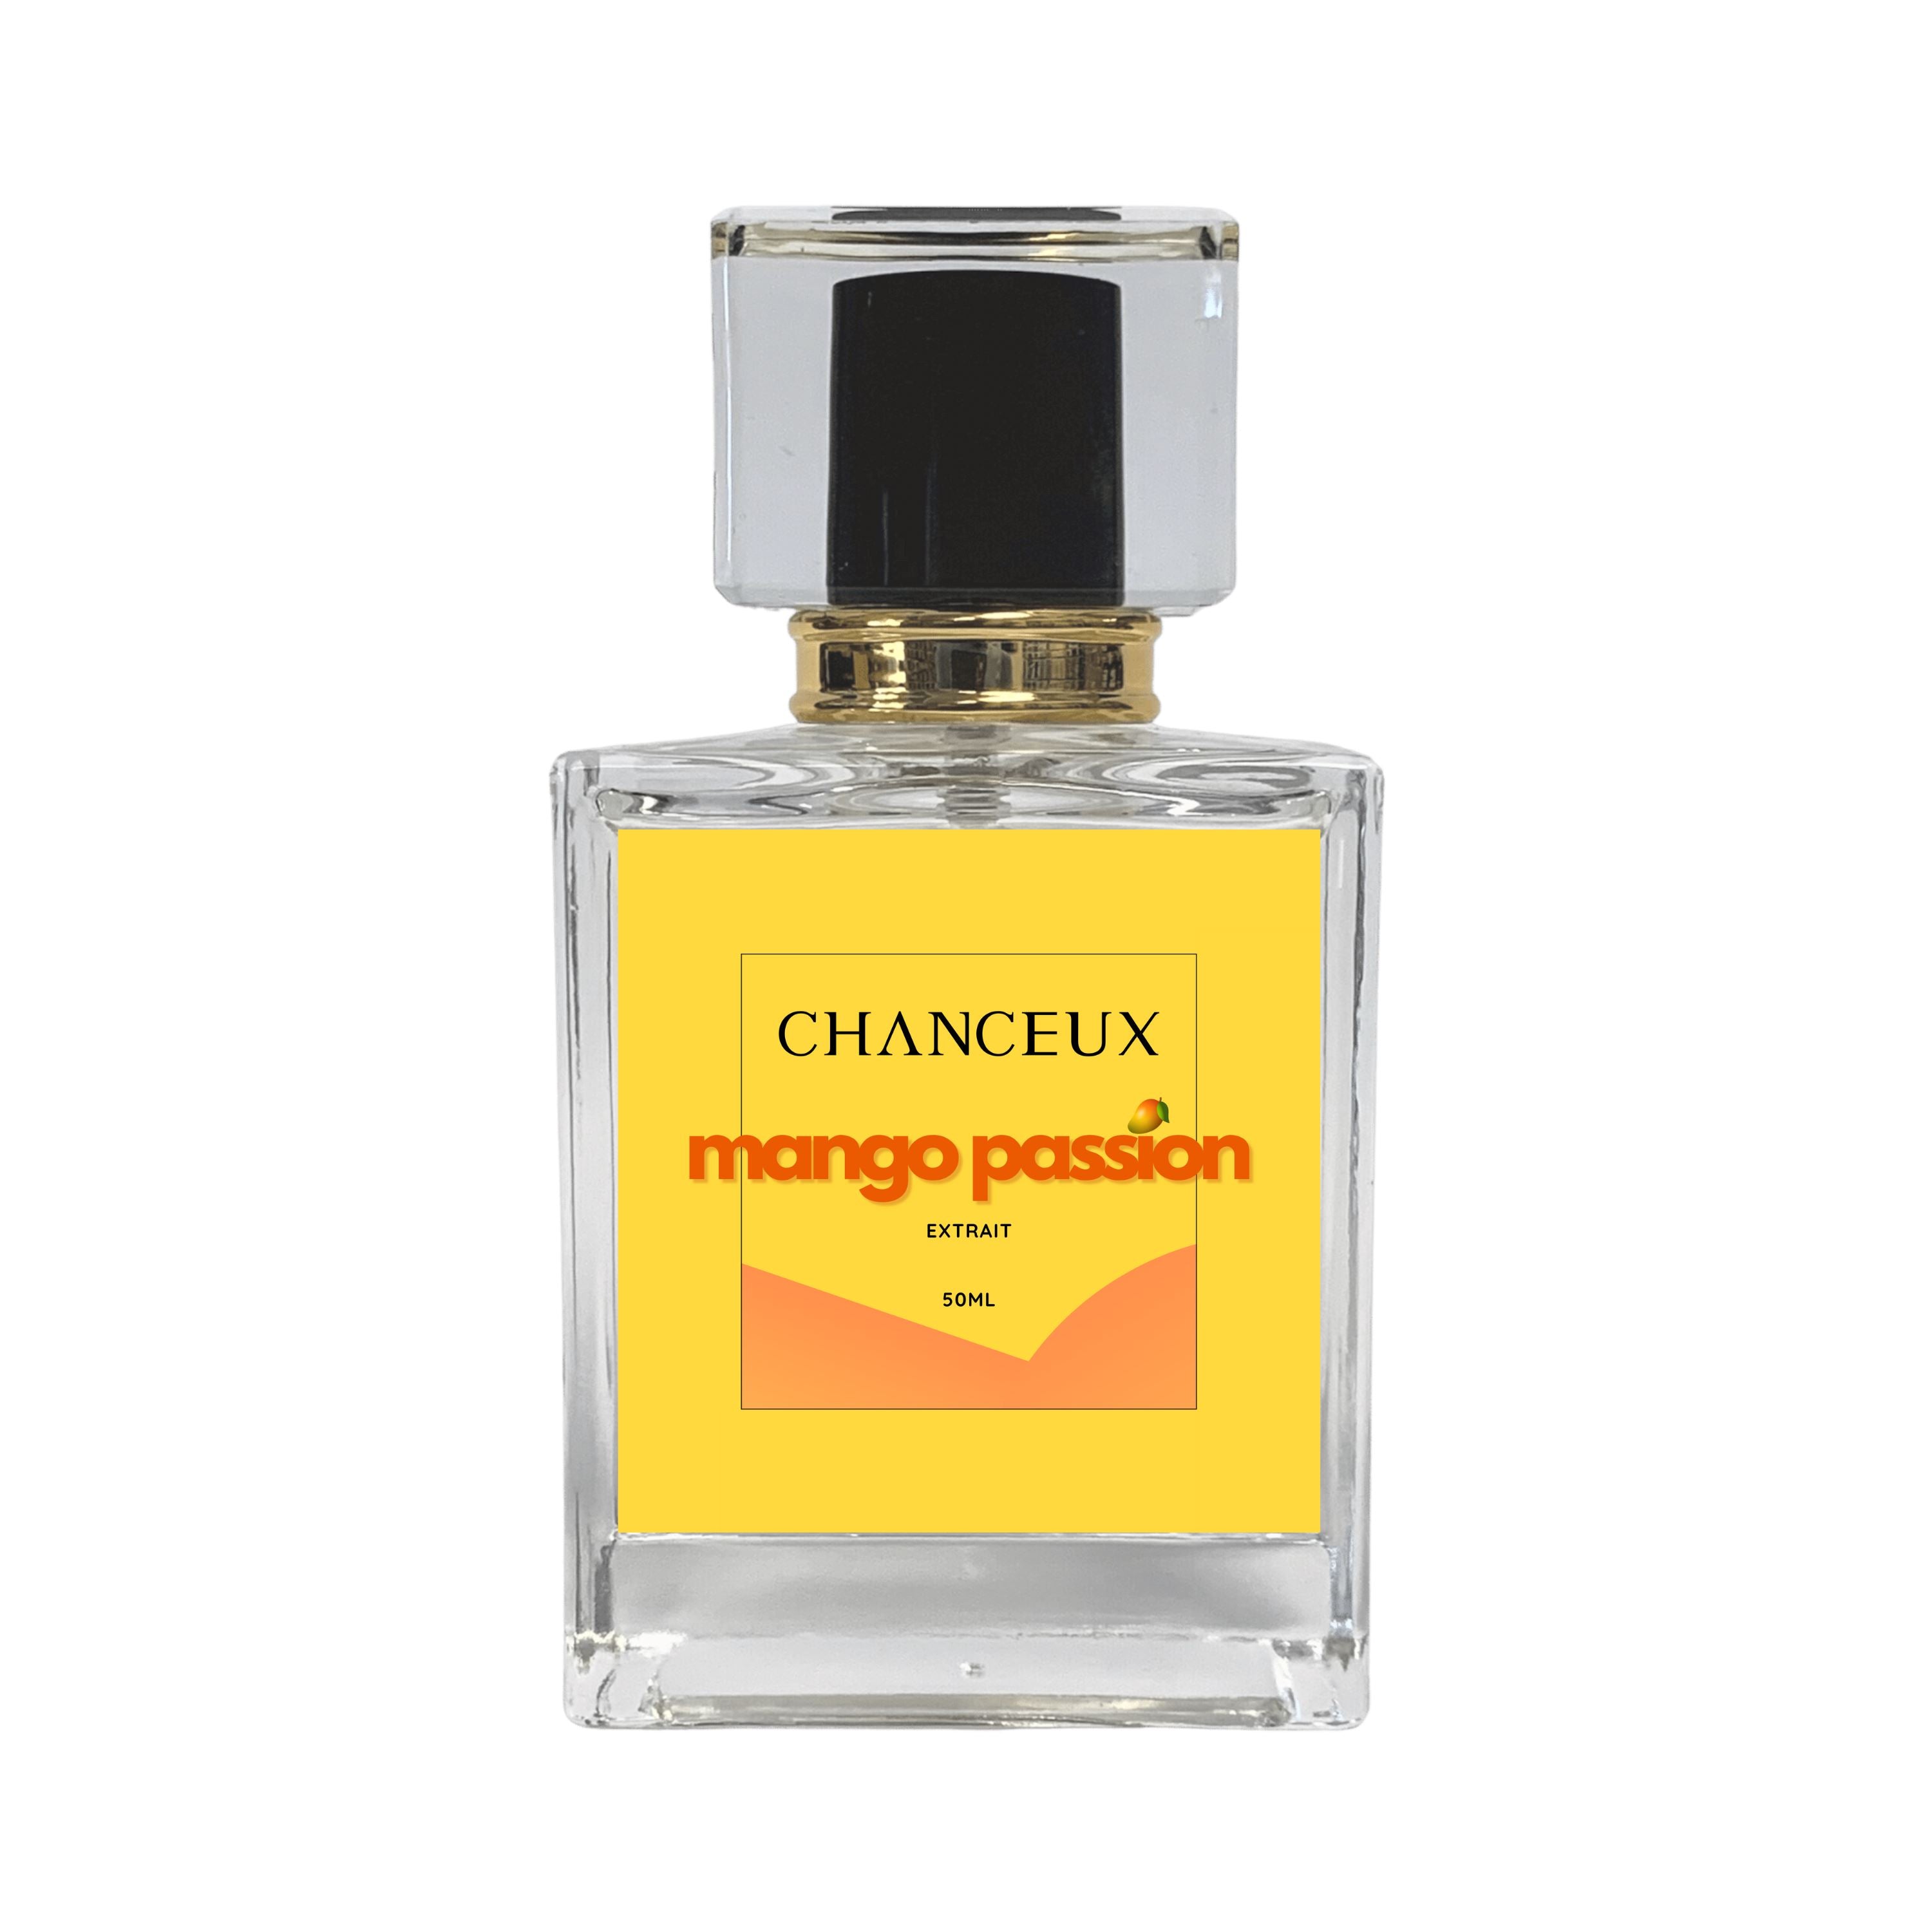 MANGO PASSION Chanceux Parfum 